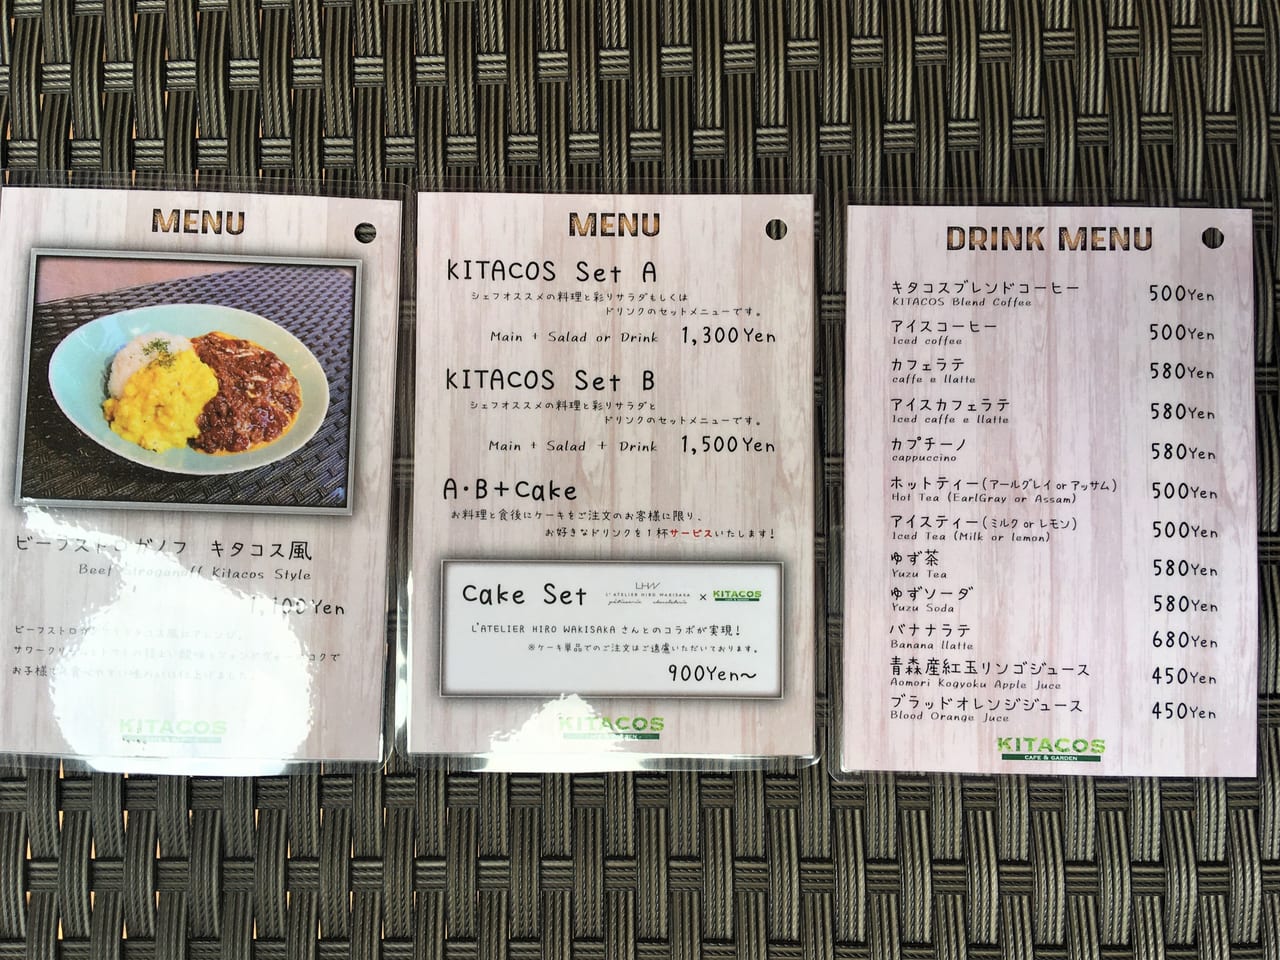 KITACOS menu